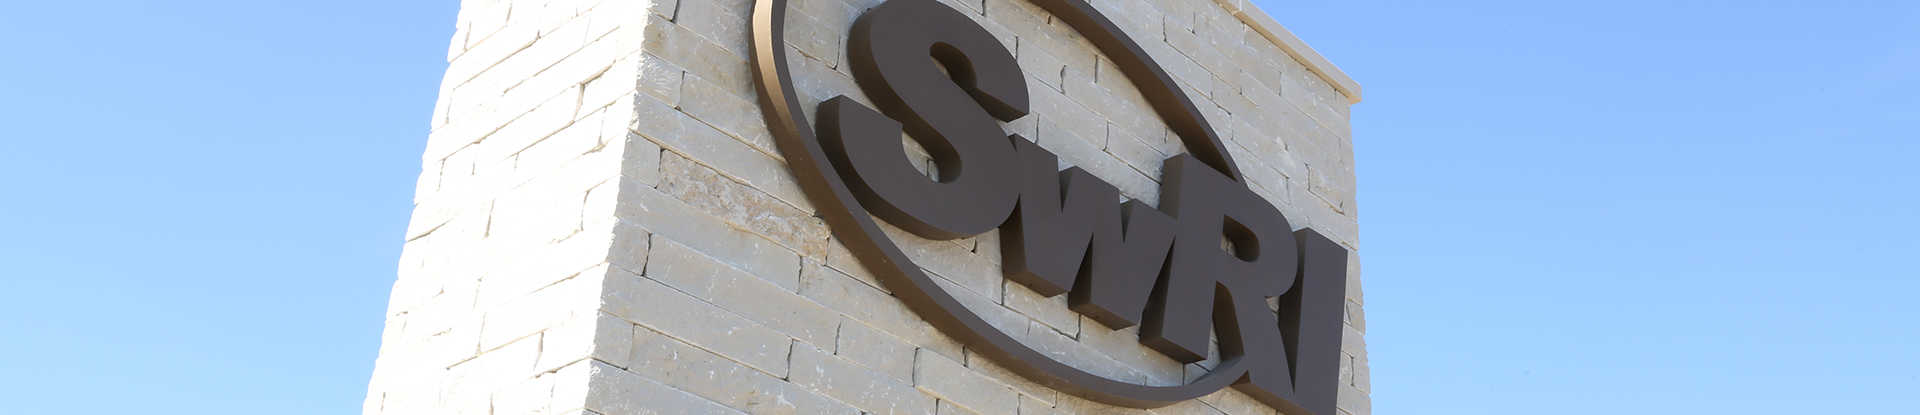 Entrance sign to SwRI San Antonio campus